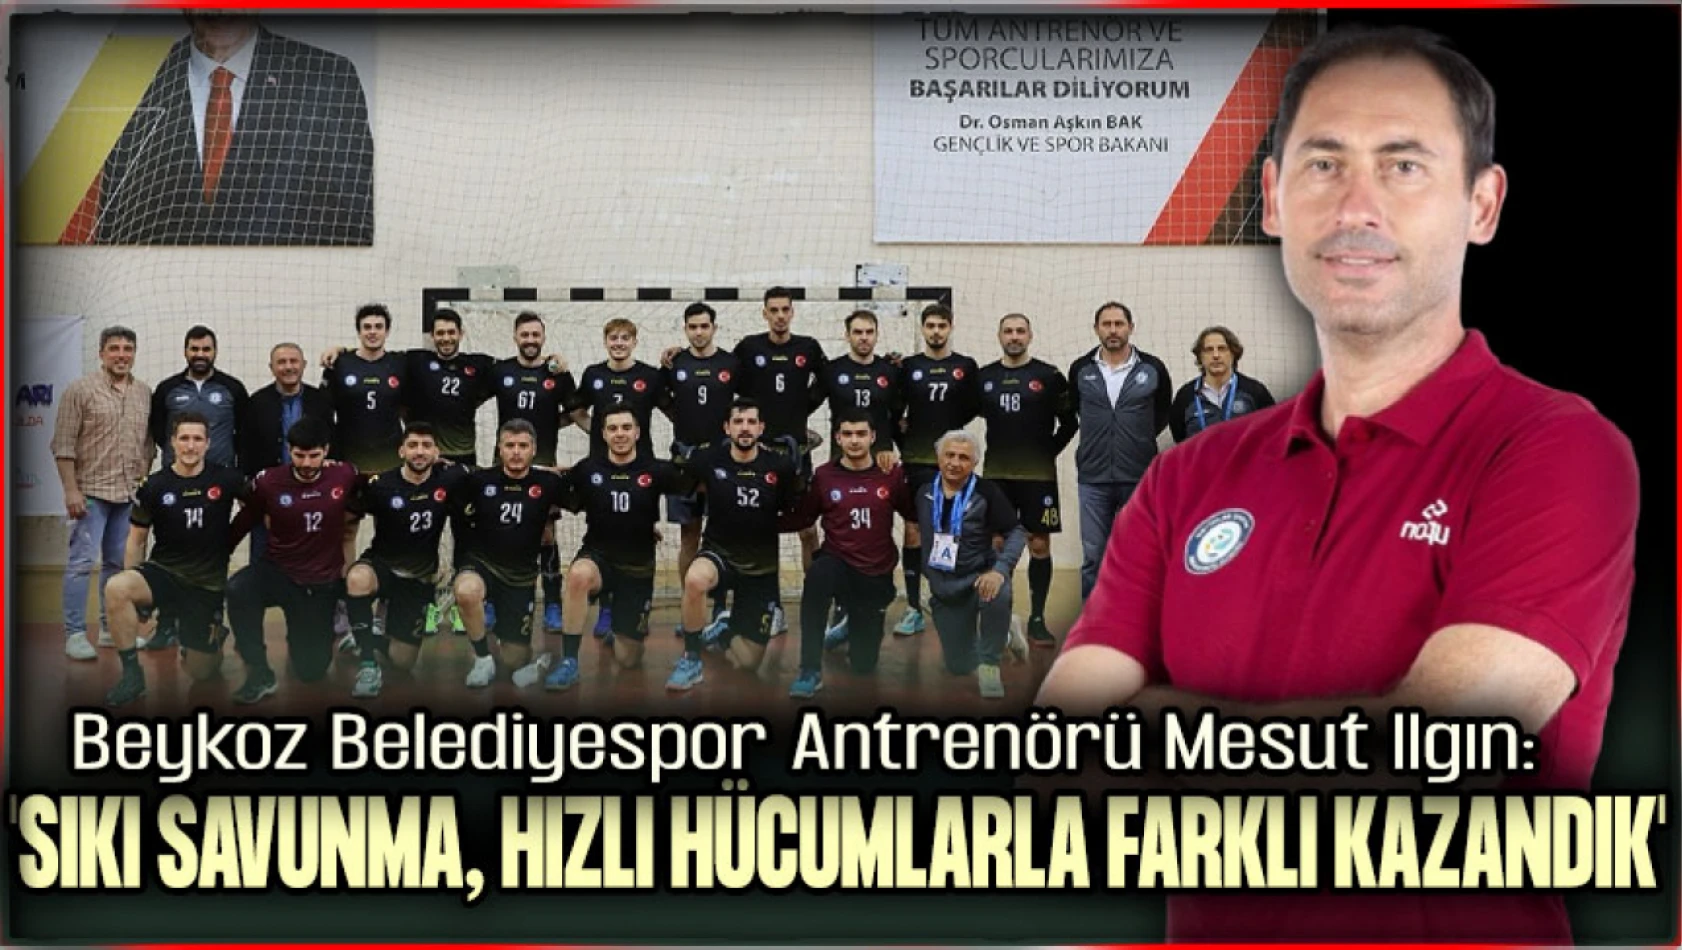 Beykoz Belediyespor Antrenörü Mesut Ilgın'dan Nilüfer Belediyespor Galibiyeti Değerlendirmesi